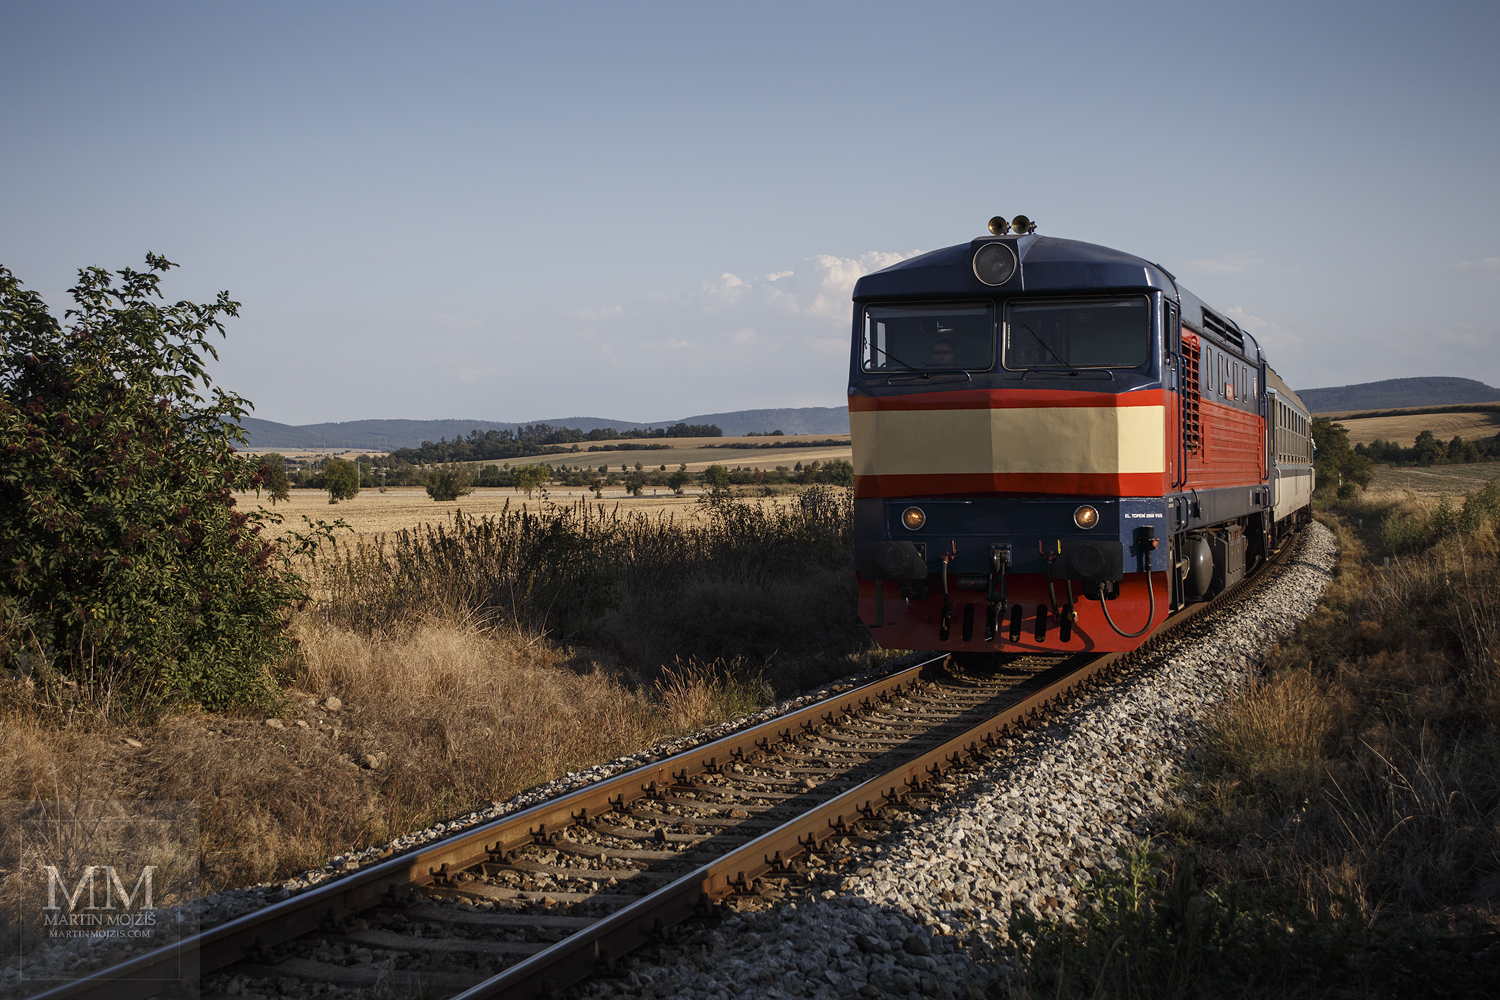 Velkoformátová umělecká fotografie diesel-elektrické lokomotivy řady 749. Martin Mojžíš.